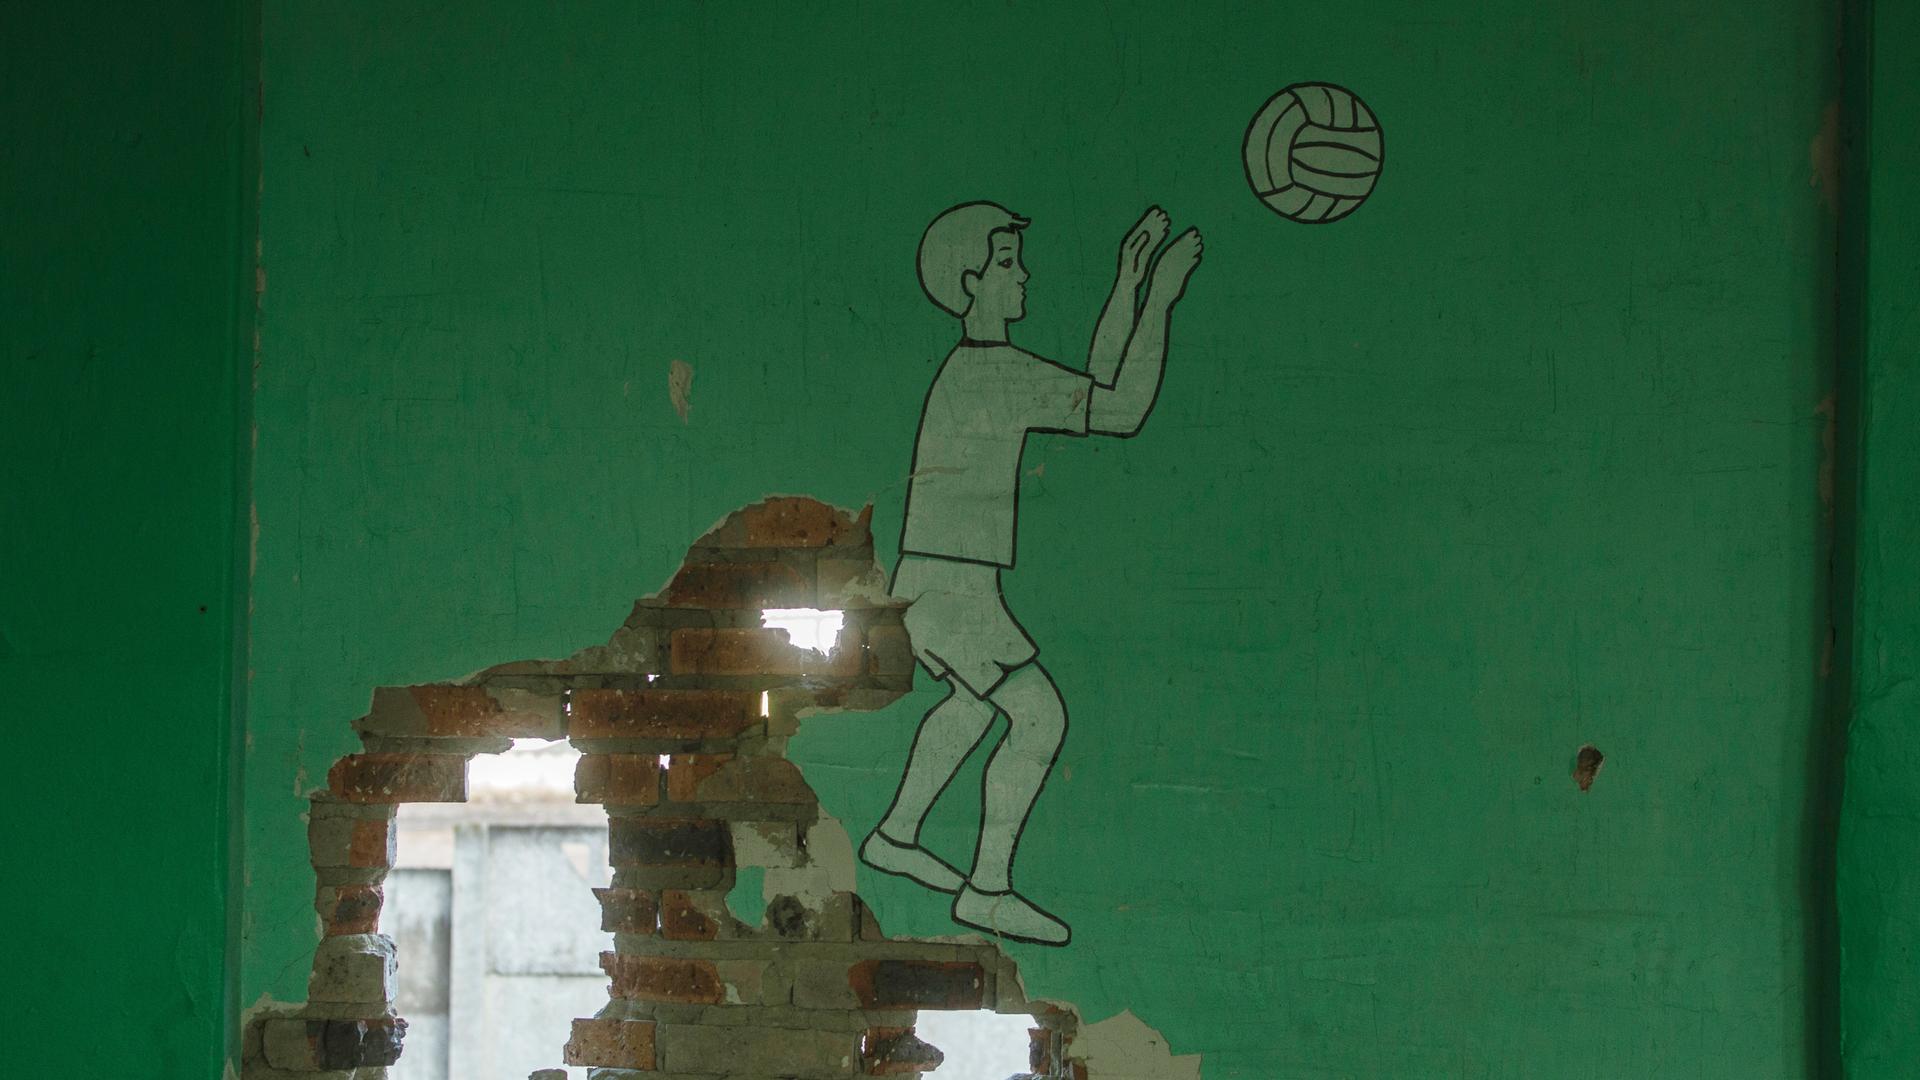 Eine durch militärischen Beschuss durchlöcherte Wand in einer Schule in Bakhmut, Gebiet Donezk. Auf der grünen Wand ist ein Junge beim Ball spielen abgebildet.